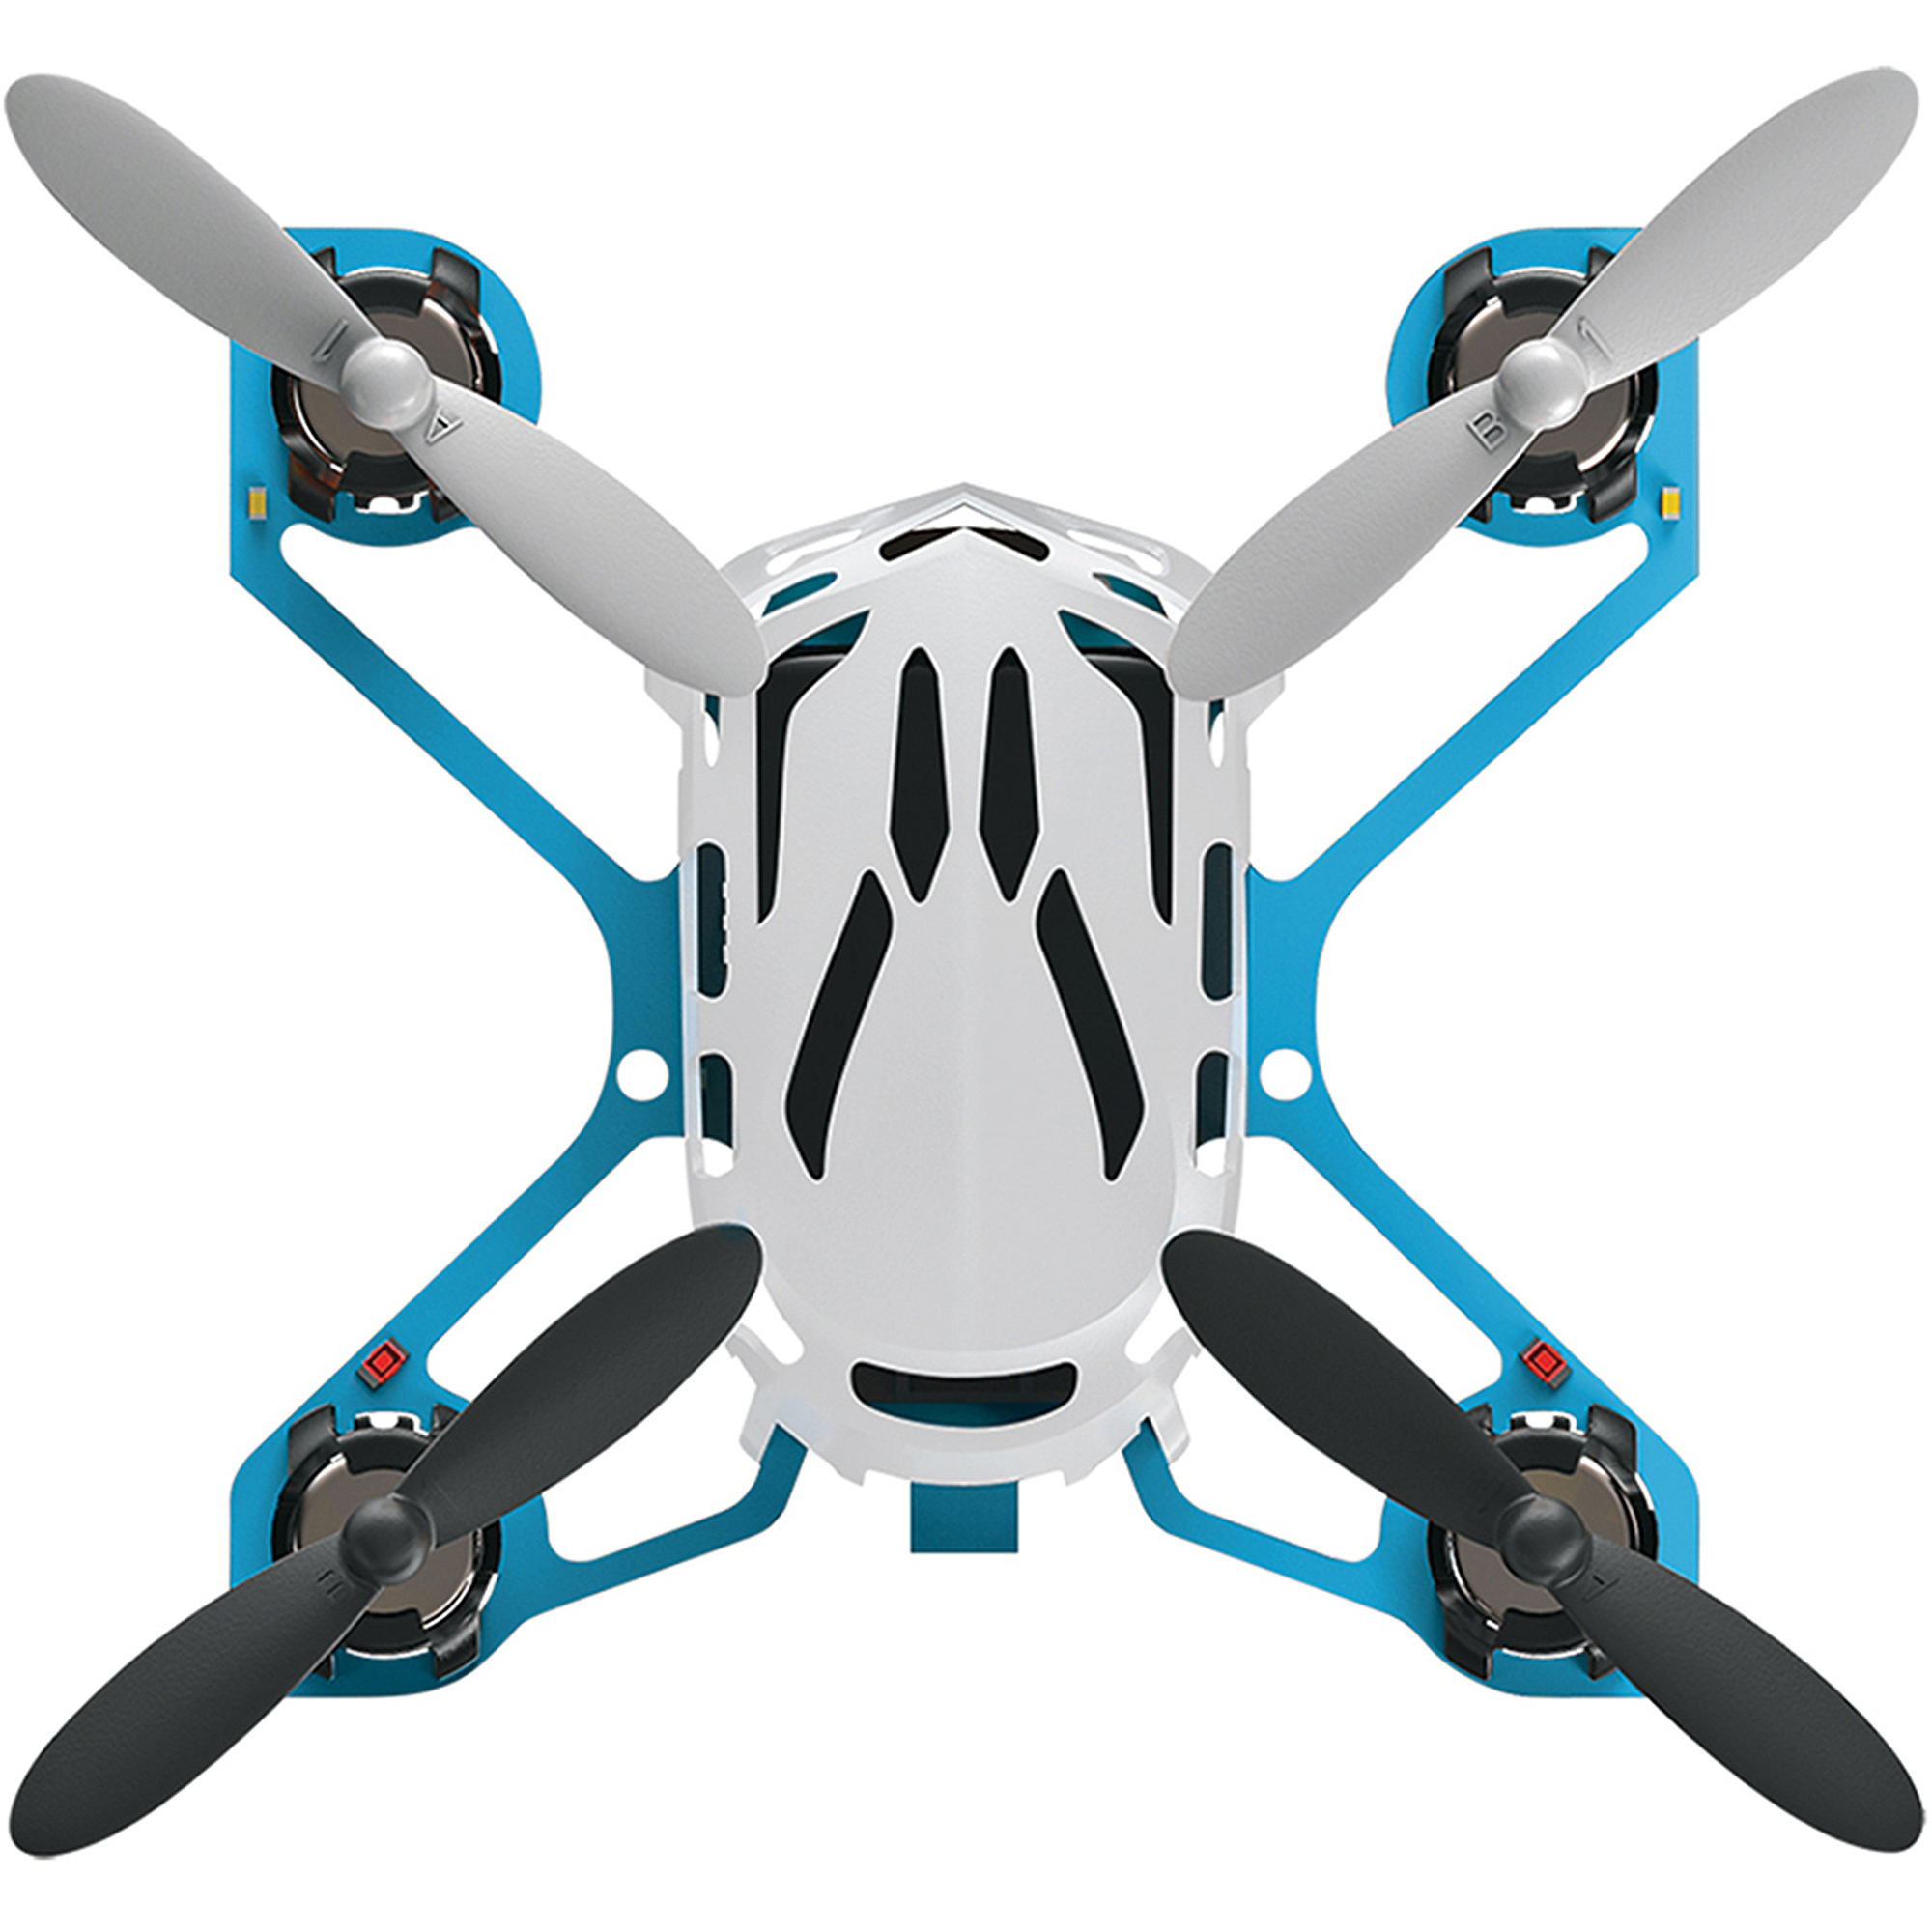 Estes R/c Quadcopter - image 1 of 4